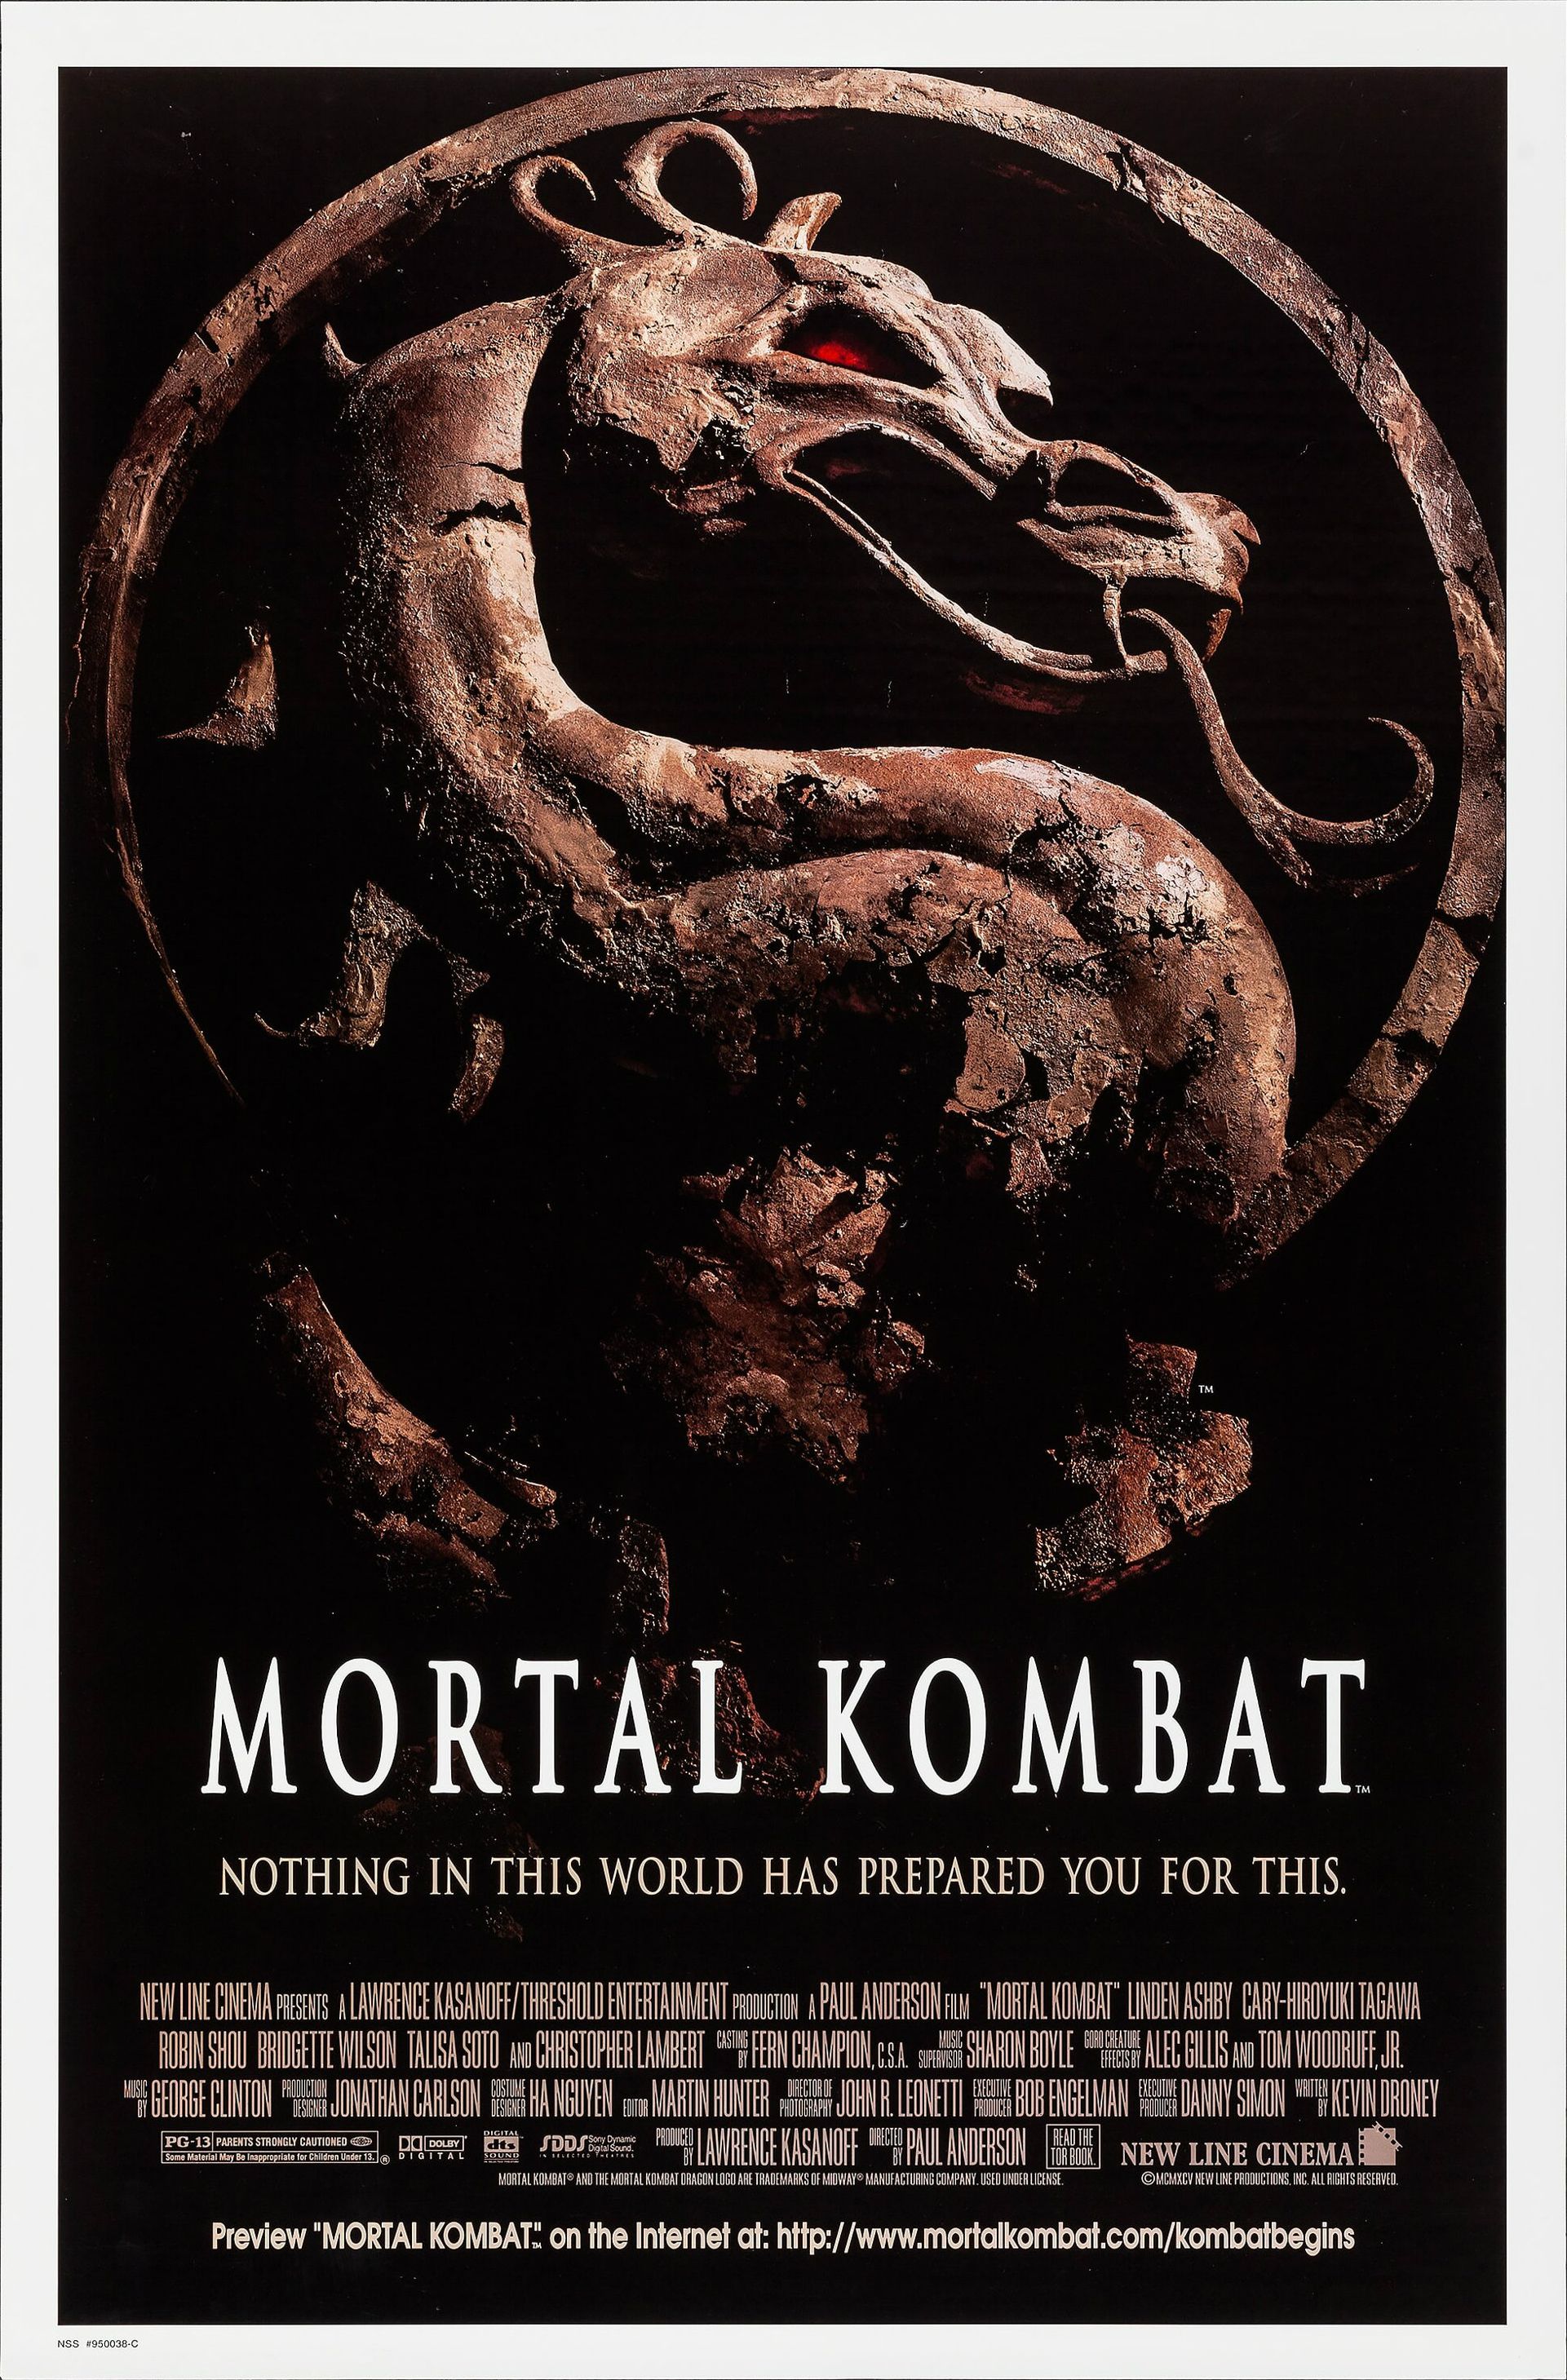 Mortal Kombat (film). Warner Bros. Entertainment